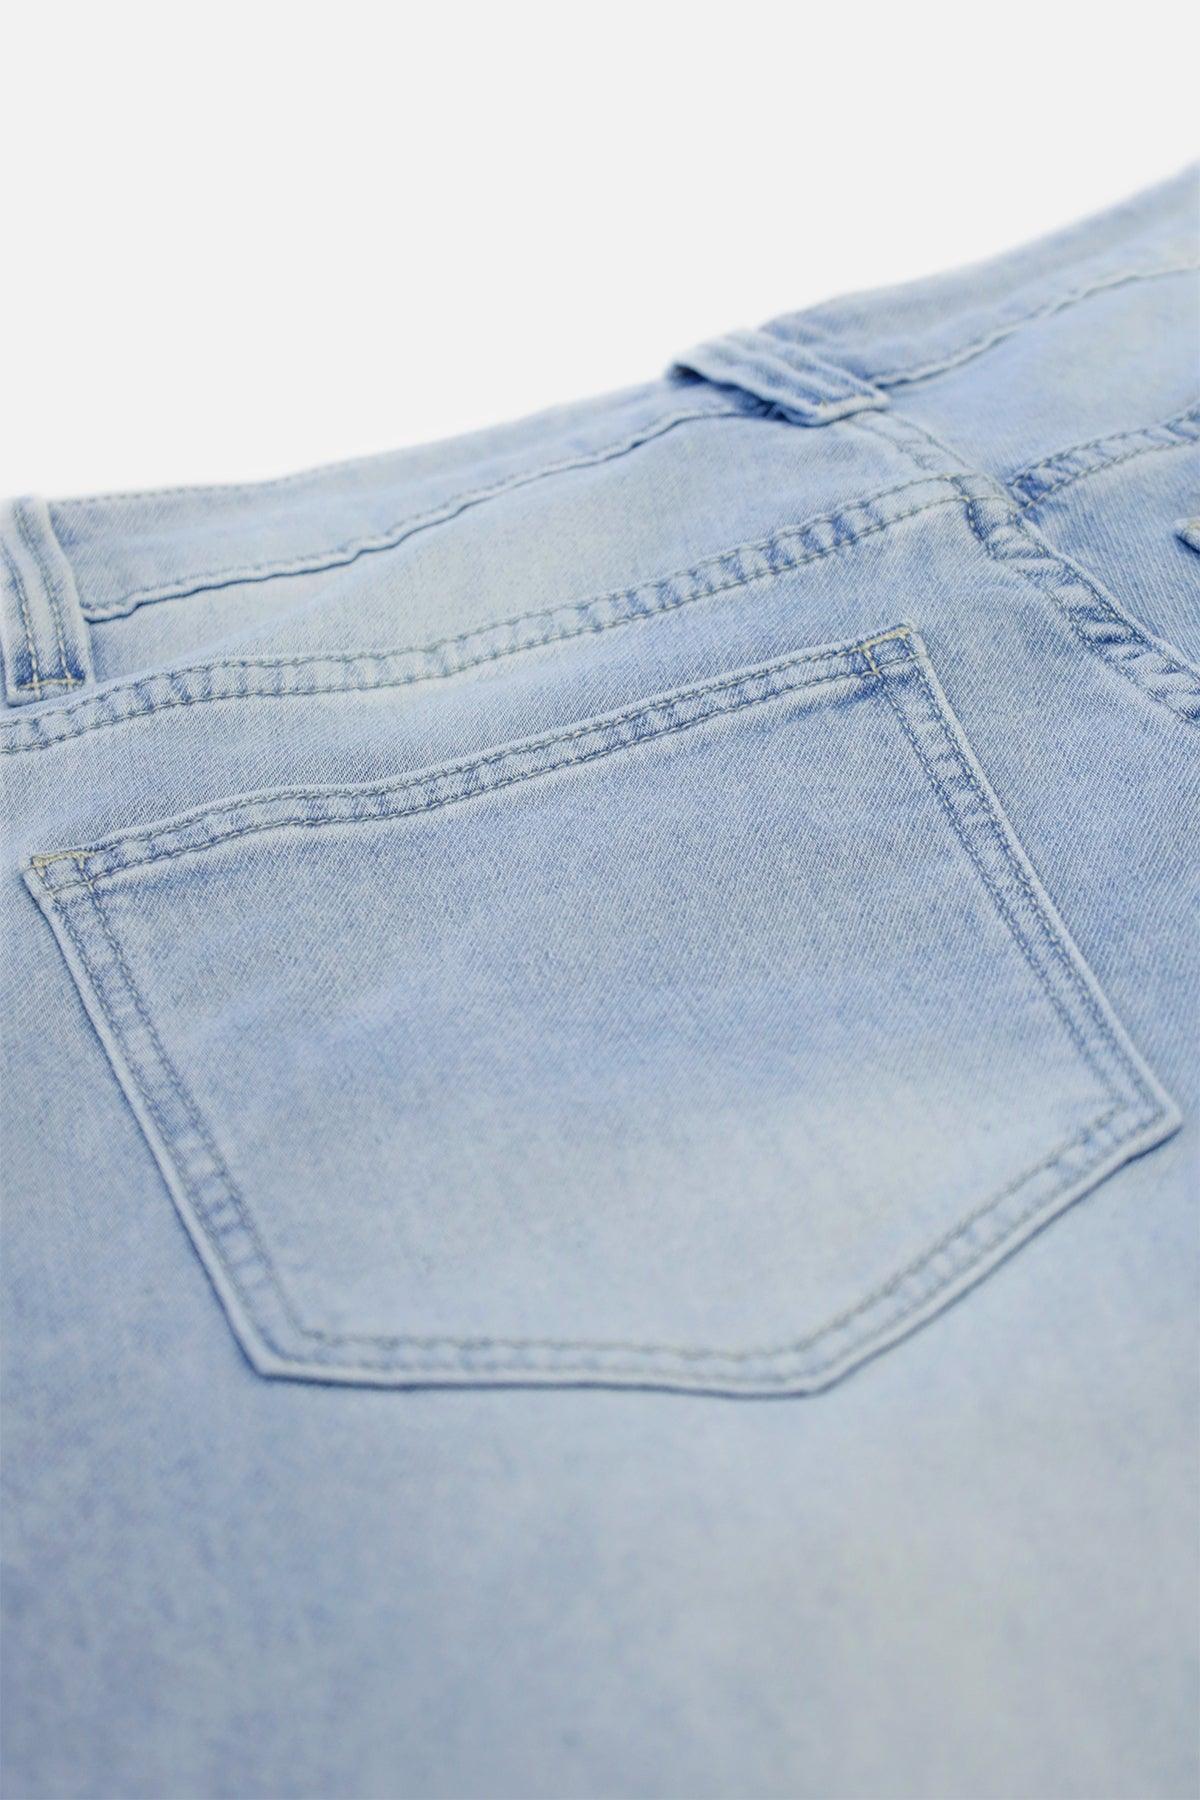 Men's Rolled Hem Denim Shorts - Light Blue - Jed North